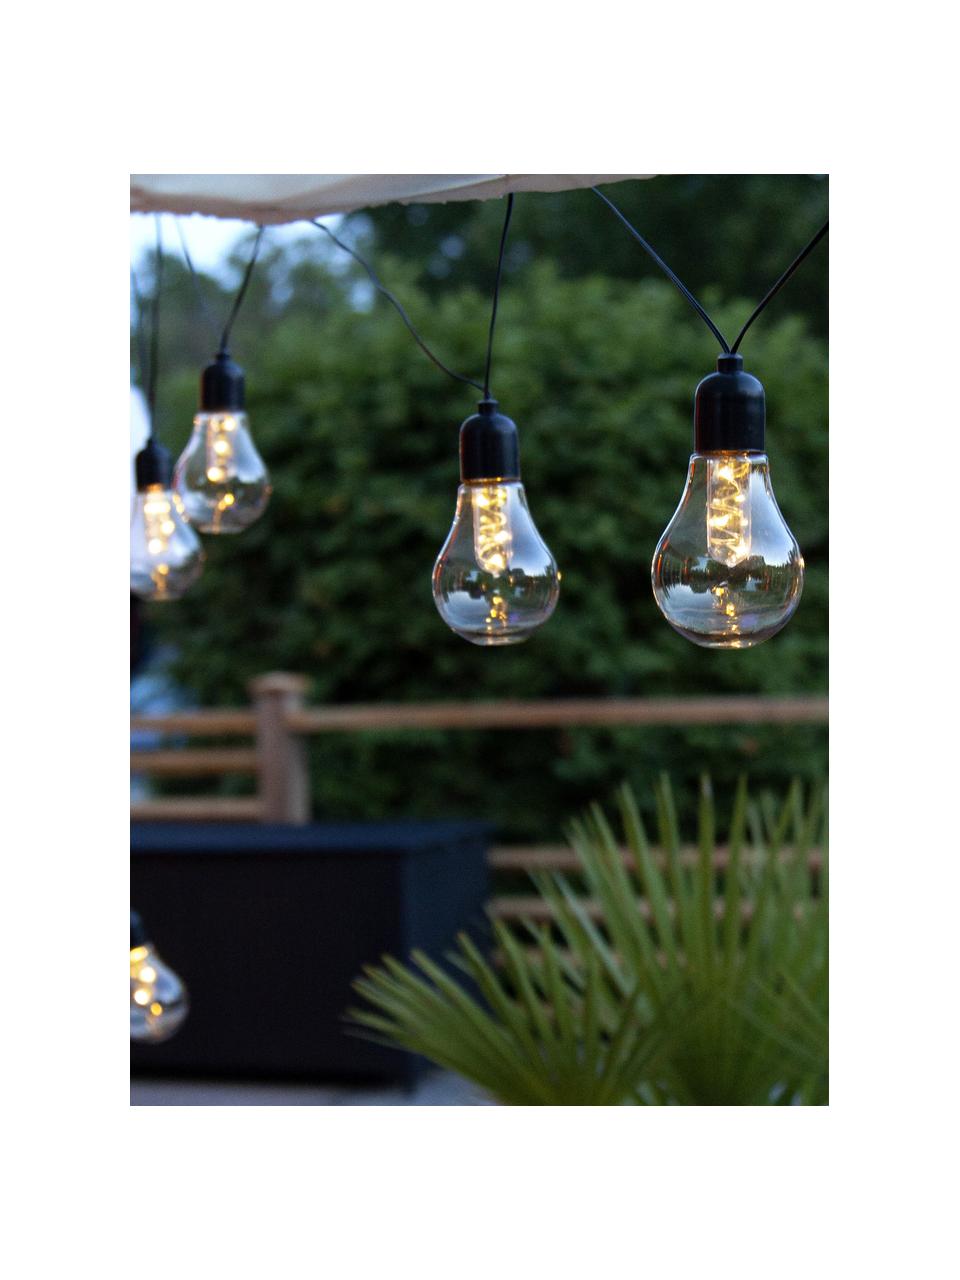 Girlanda świetlna LED Glow, dł. 505 cm i 10 lampionów, Czarny, szary, transparentny, D 505 cm